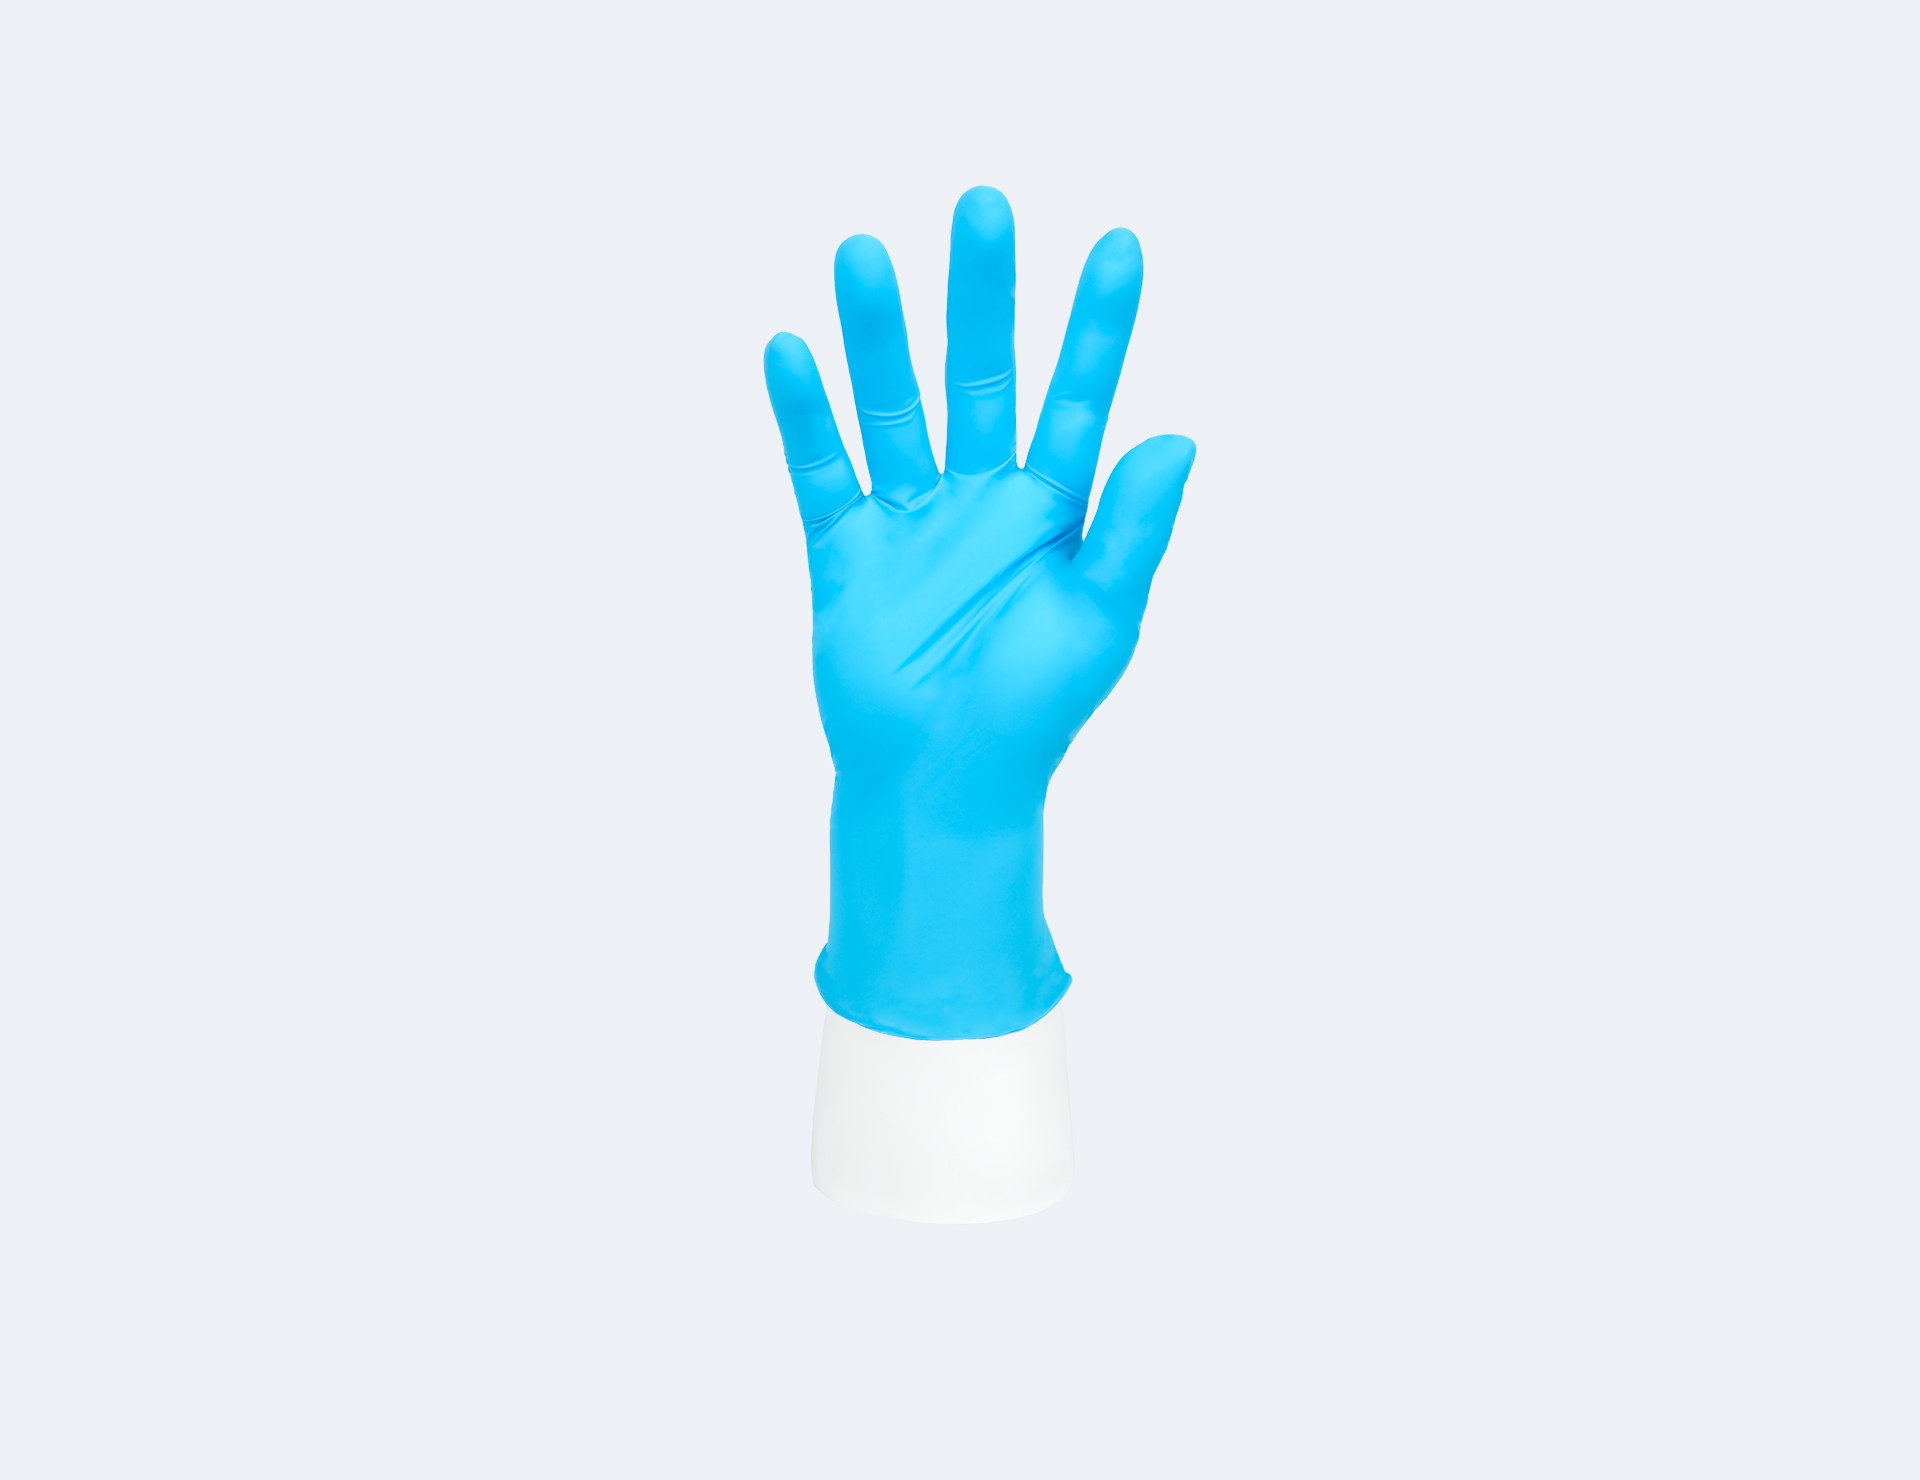 INTCO medical blue nitrile gloves